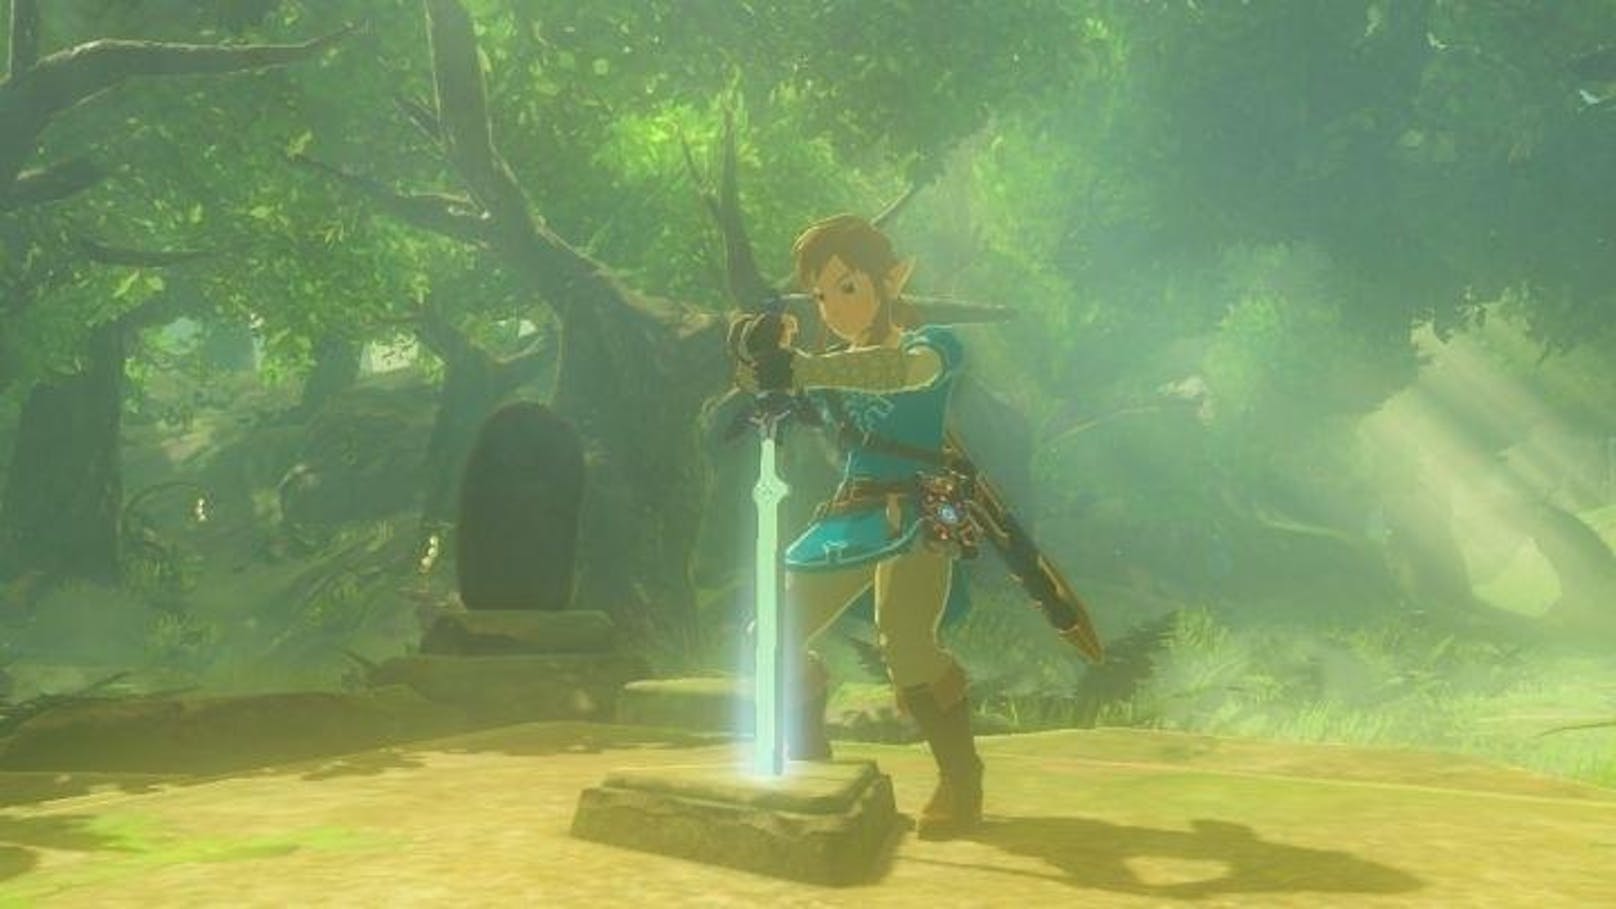 Auch Zelda-Fans haben Grund zur Freude: Nintendo stellte weitere Details der neuen DLC-Pakete für "The Legend of Zelda: Breath of the Wild" vor. "Die legendären Prüfungen" erscheint am 30. Juni, "Die Ballade der Recken" im Winter 2017. Auch amiibo der vier Recken aus dem Spiel sind geplant.